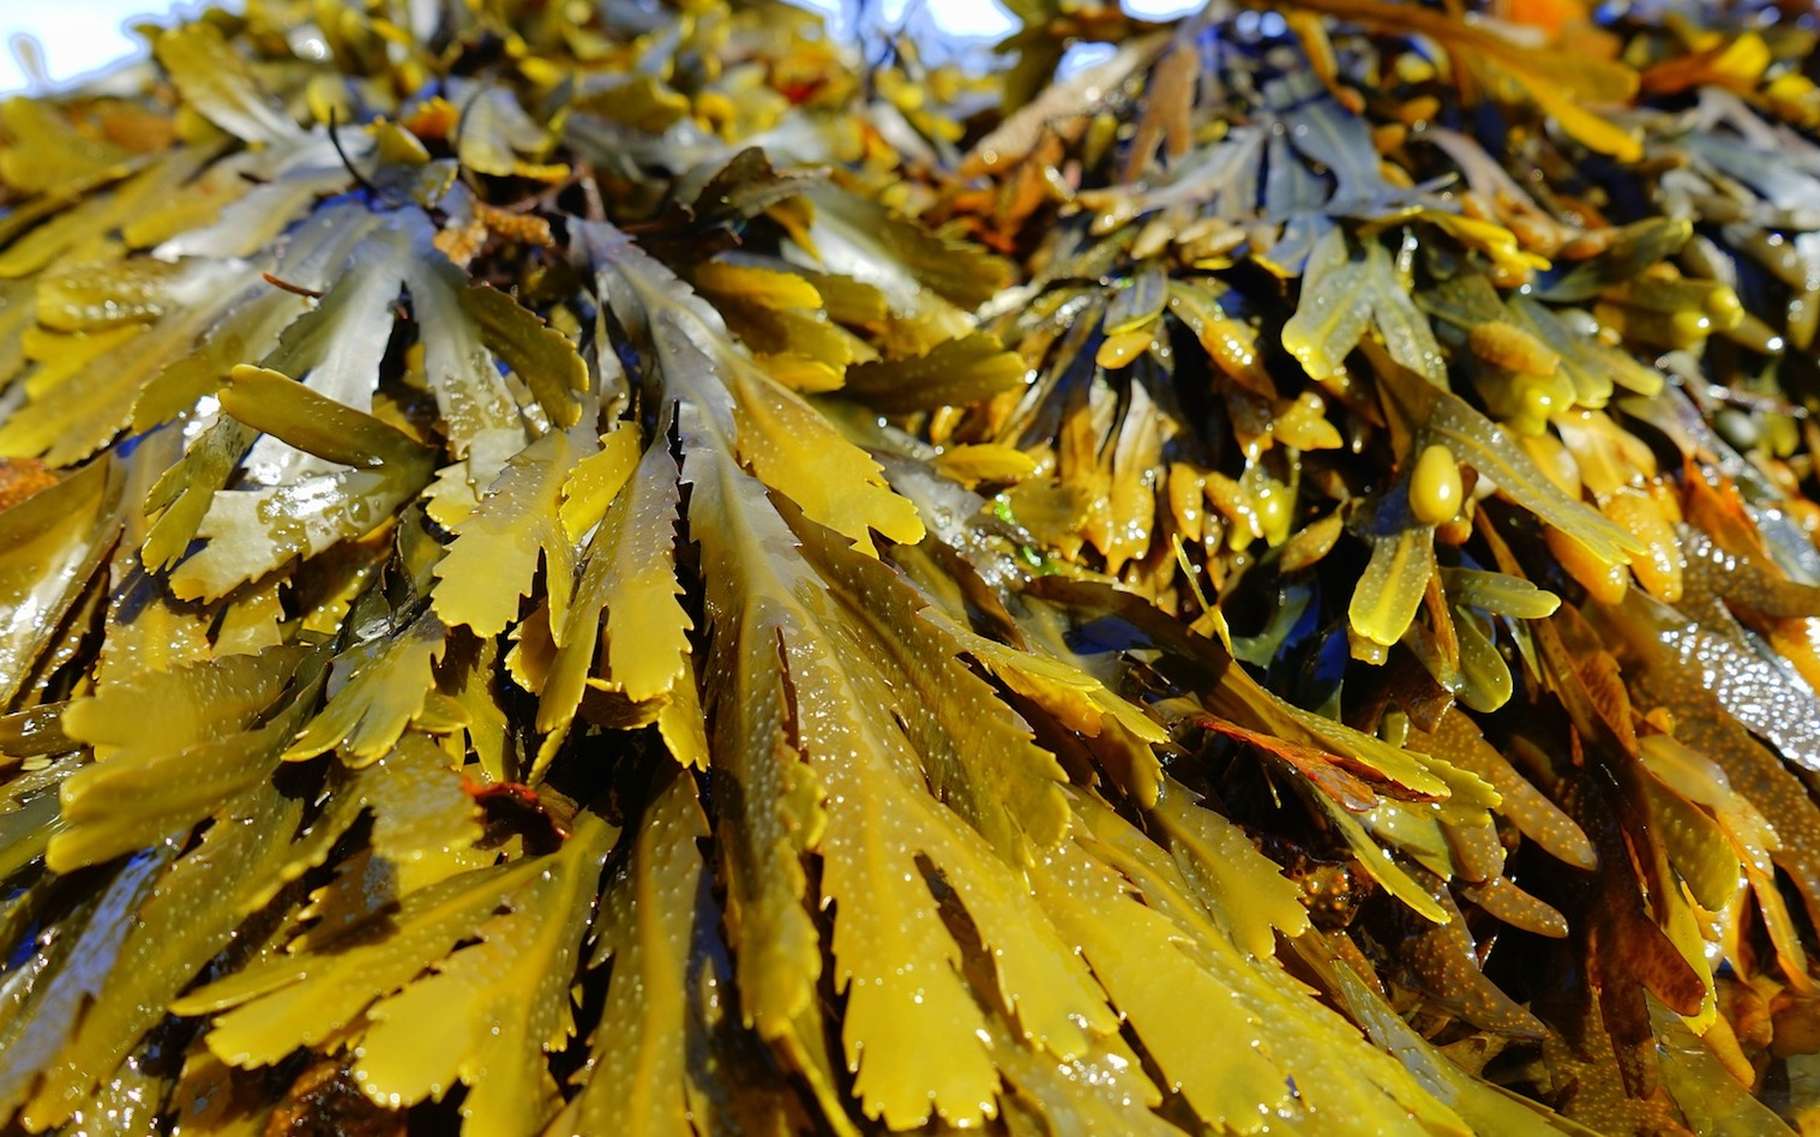 Une équipe internationale de chercheurs exploite des extraits d’algues pour produire des matériaux durables et performants. © Pexels, Pixabay, CC0 Public Domain